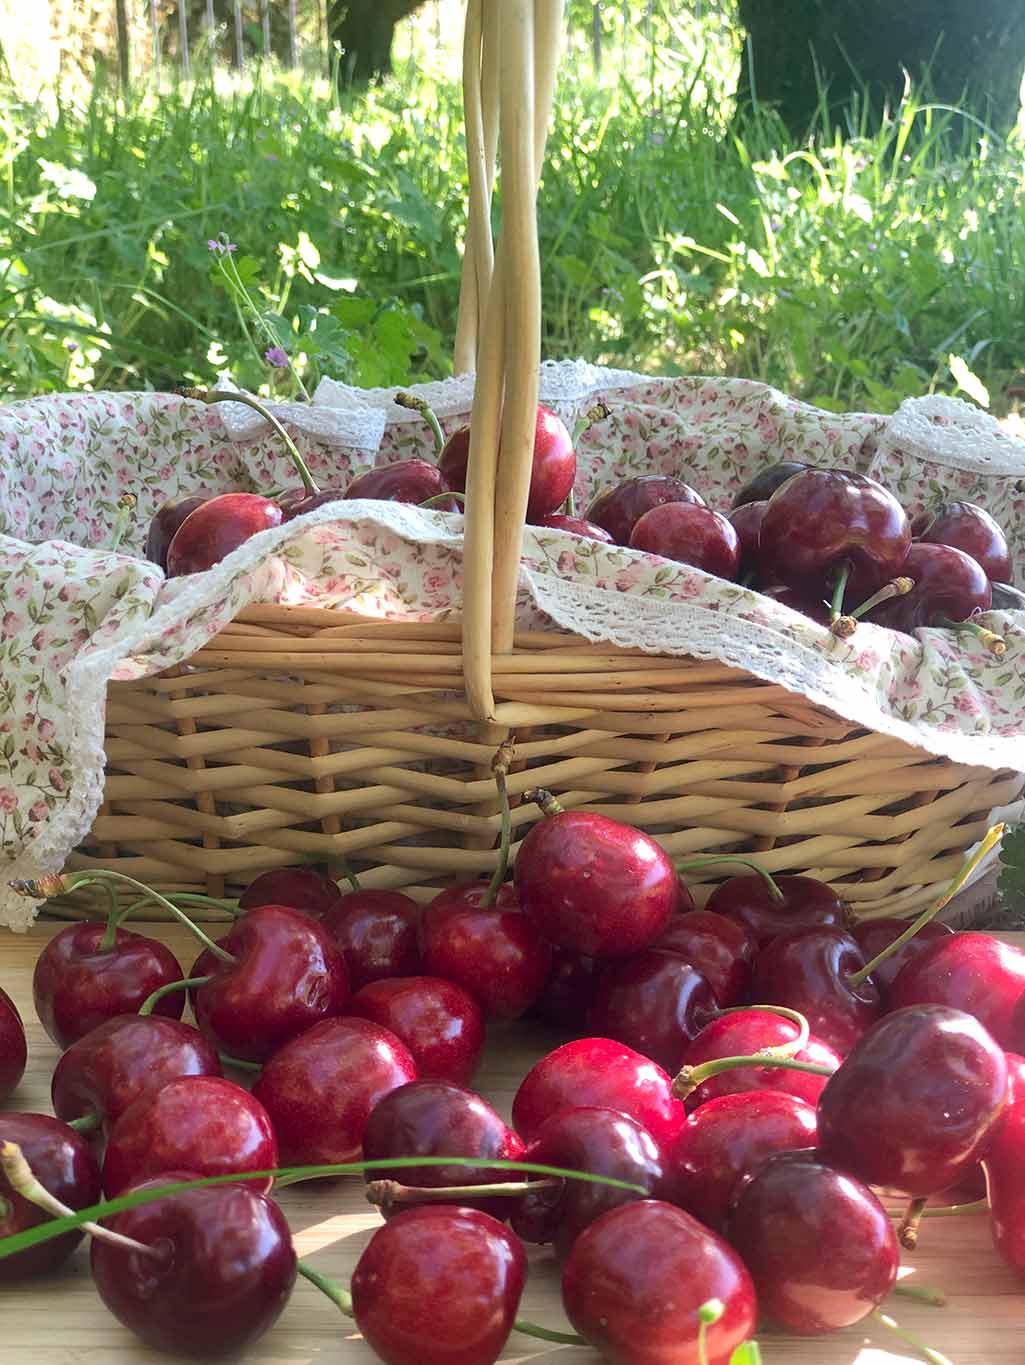 Recetas con cerezas saludables para alimentar tu felicidad – LA PATRONA  cerezas